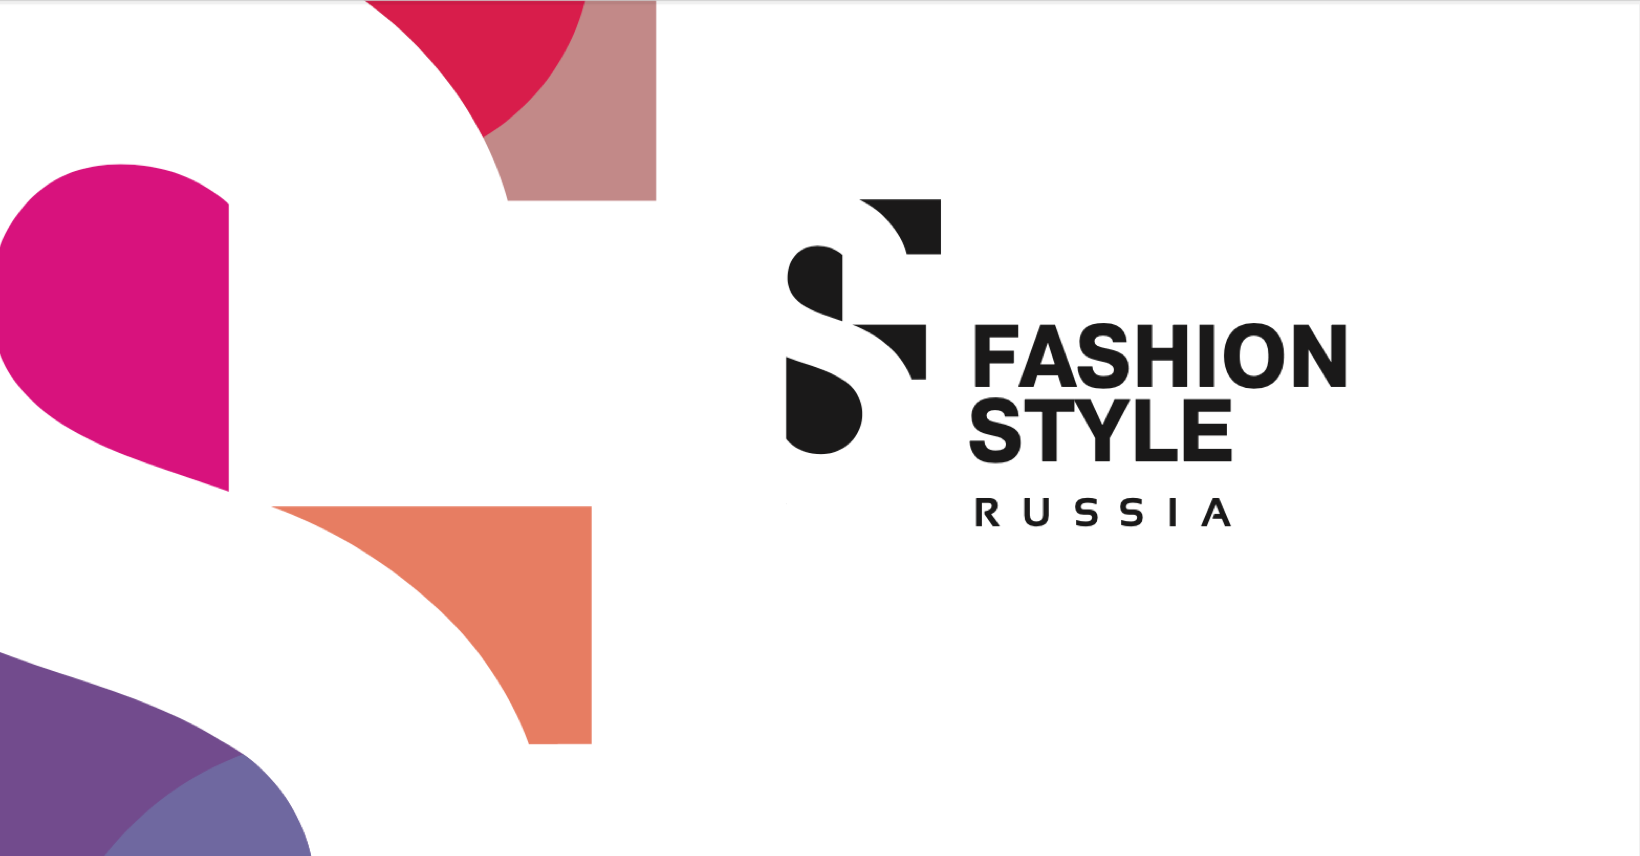 Международная выставка одежды и аксессуаров Fashion Style Russia